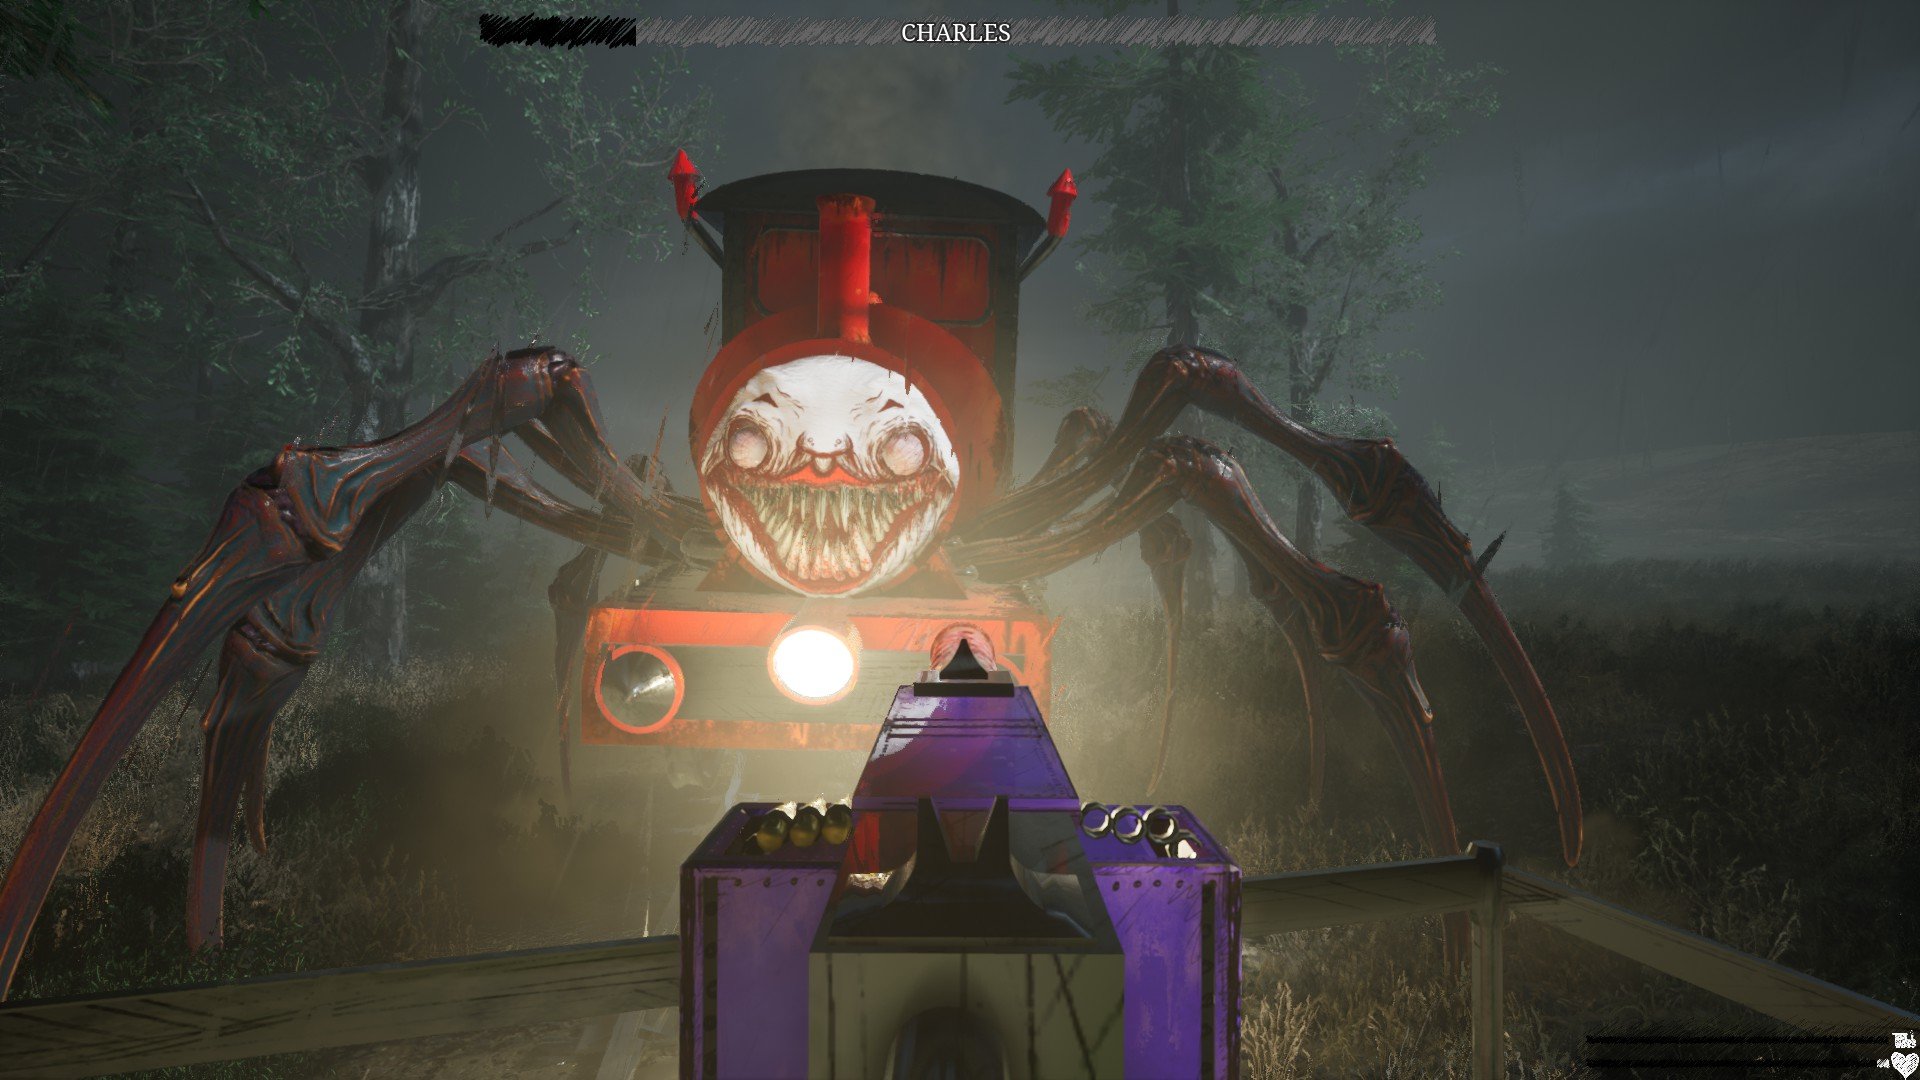 NerdBunker on X: Choo-Choo Charles é um jogo de terror que coloca o  jogador para escapar de trem assassino    / X